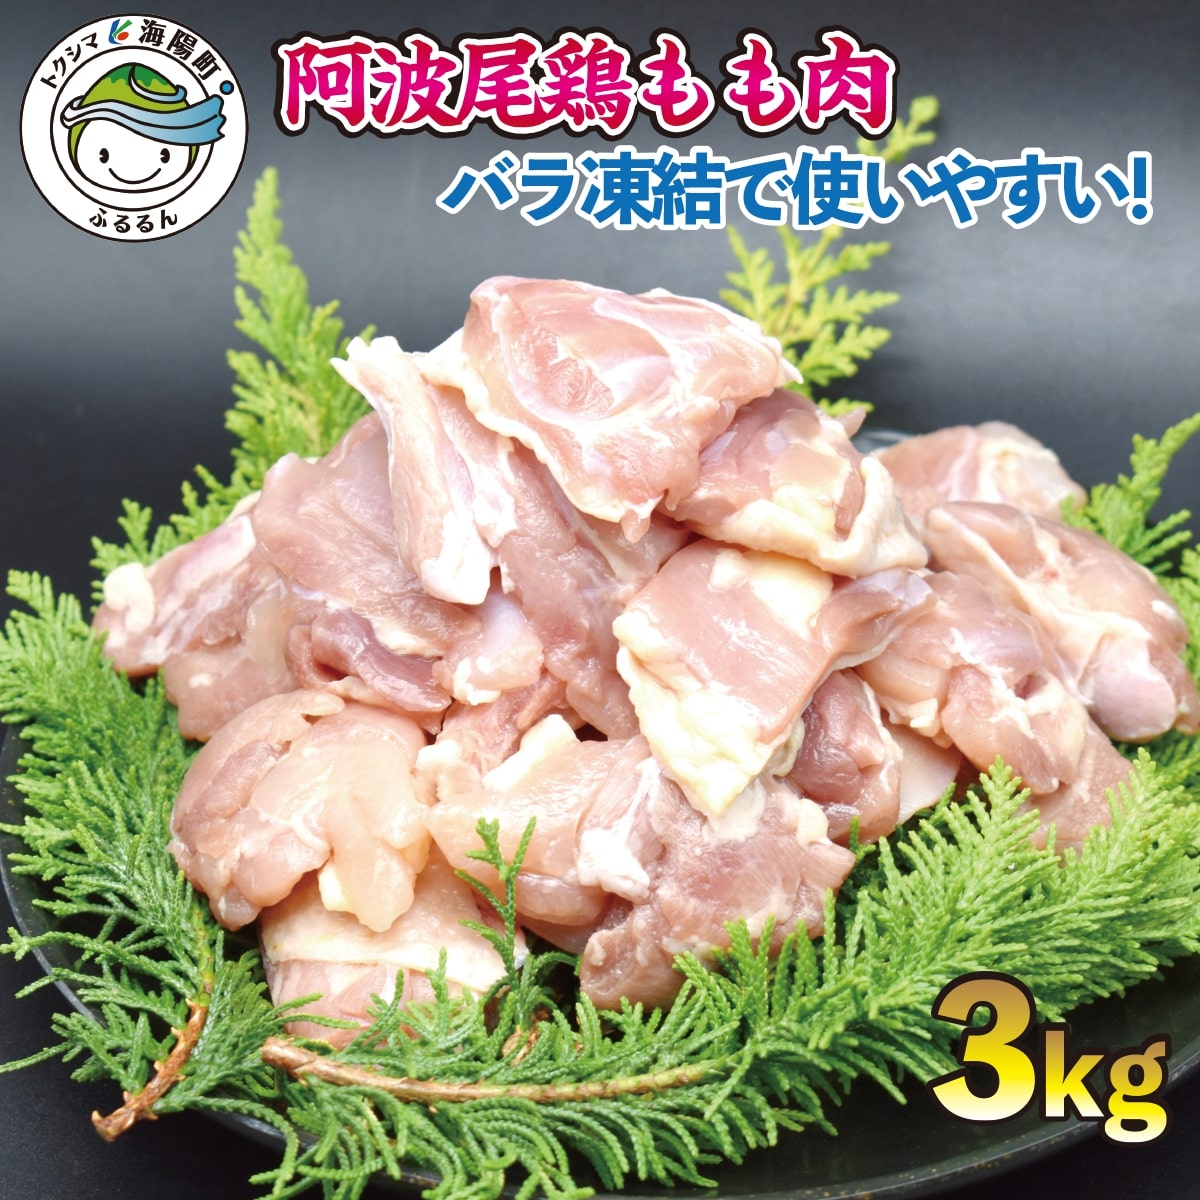 【ふるさと納税】 鶏もも 小分け 阿波尾鶏 国産 日本一 3kg 鶏もも肉 鶏モモ 鶏モモ肉 鶏肉 切り身 バラ凍結 300g×10パック 冷凍